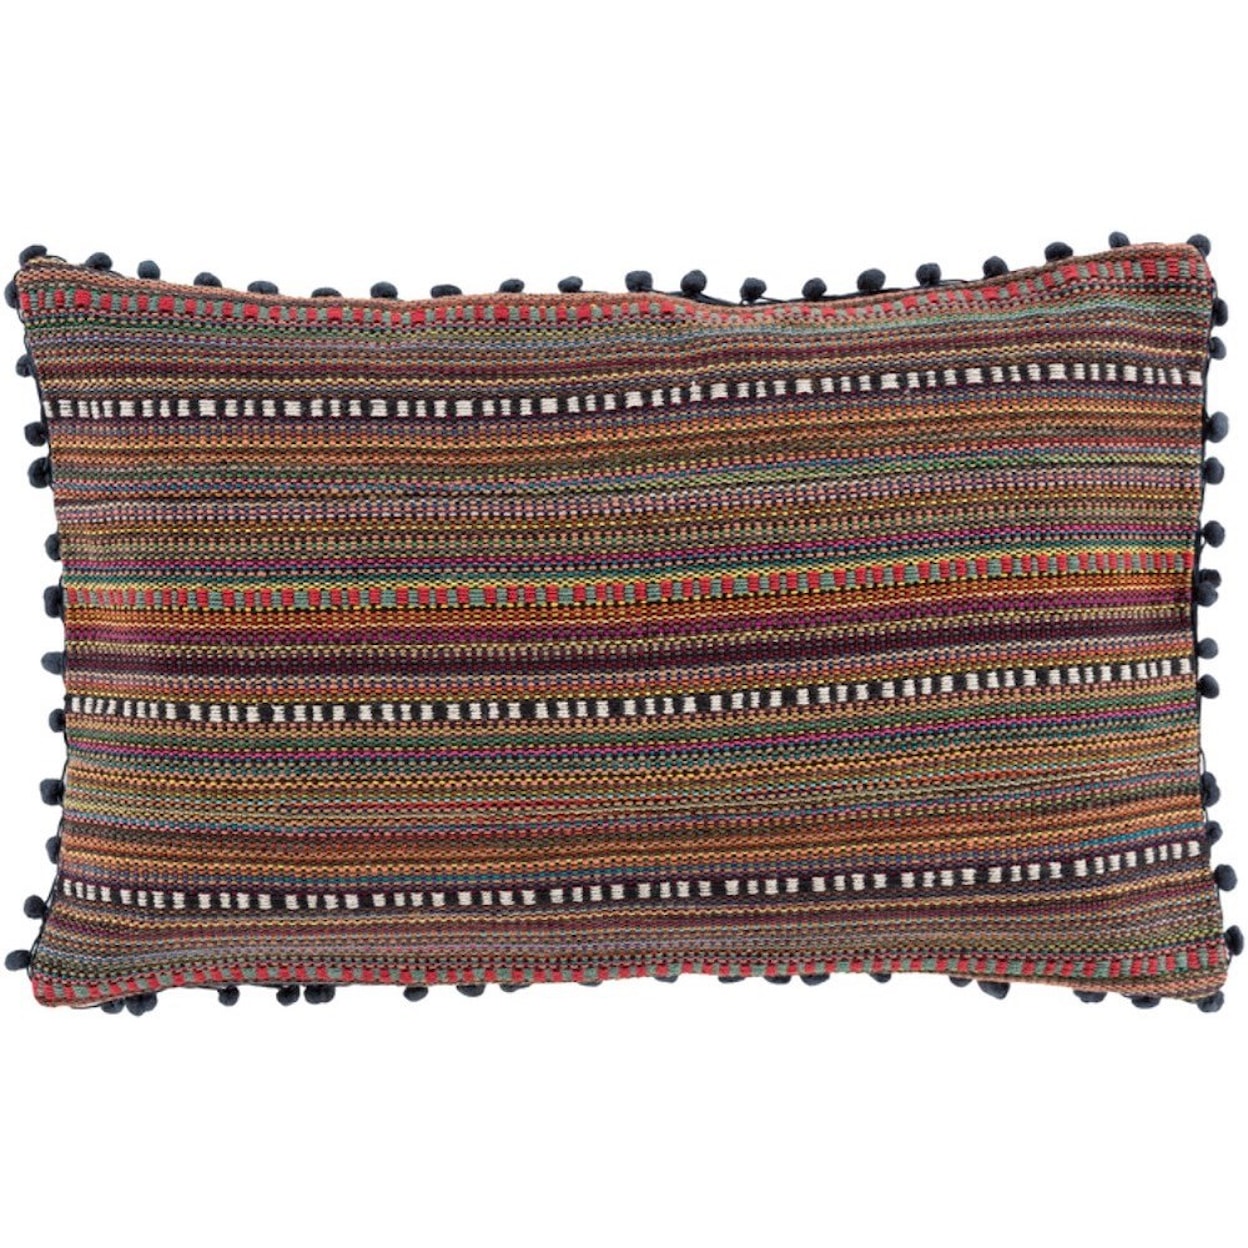 Surya Marrakech Pillow